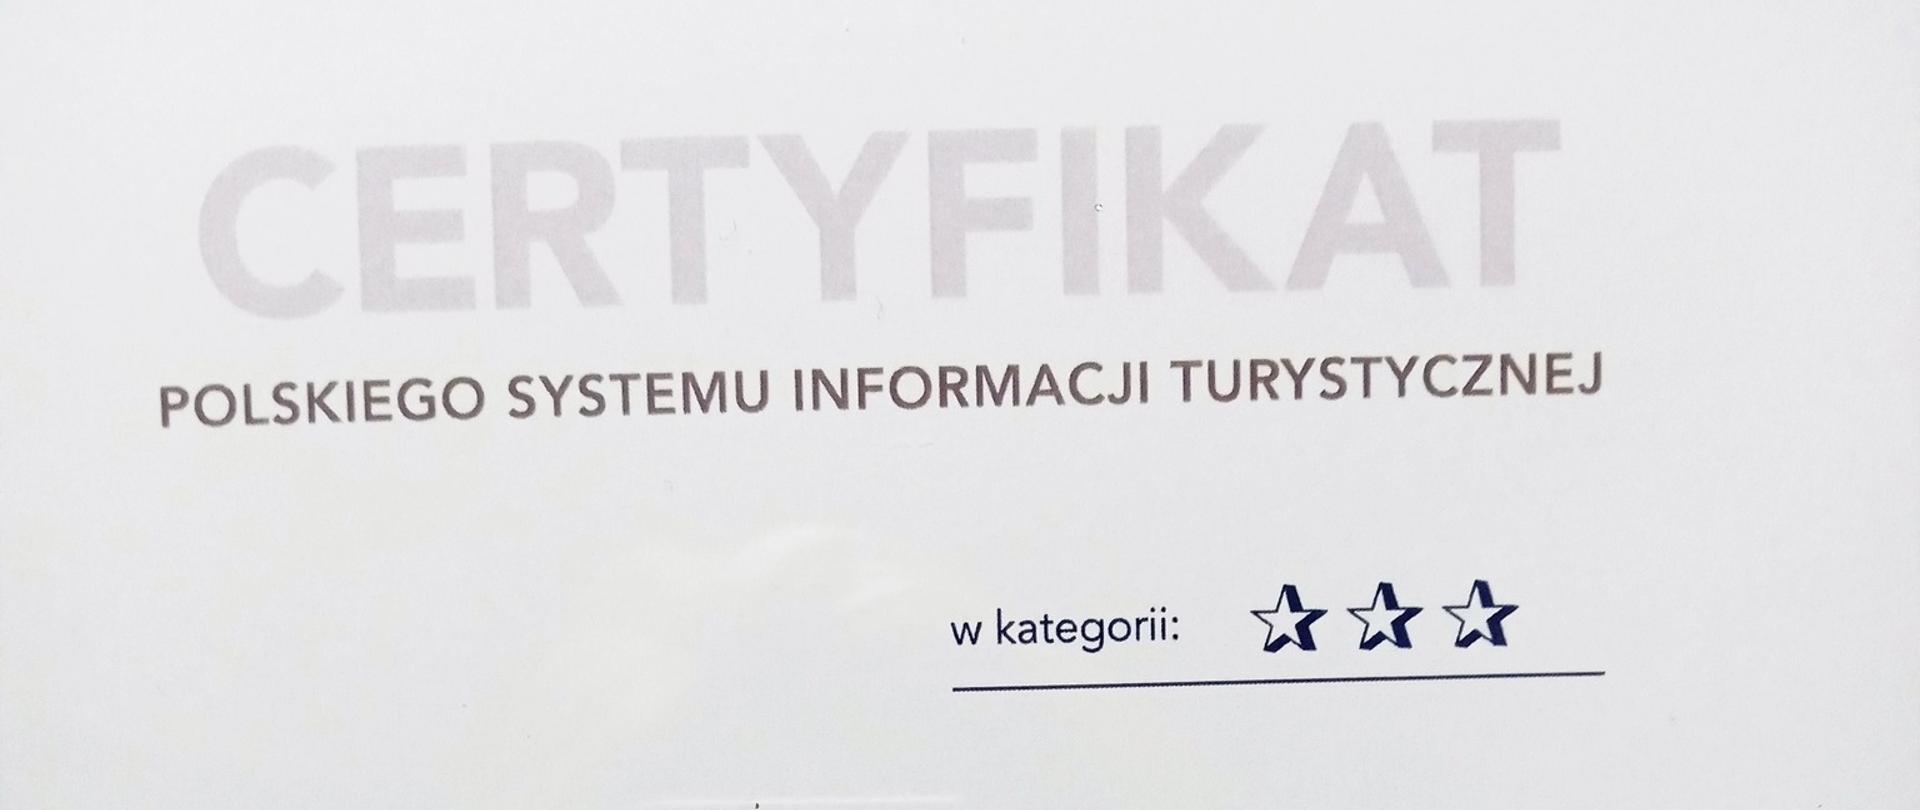 Certyfikat Polskiego Systemu Informacji Turystycznej dla Centrum Turystyki i Promocji Kraina Żubra